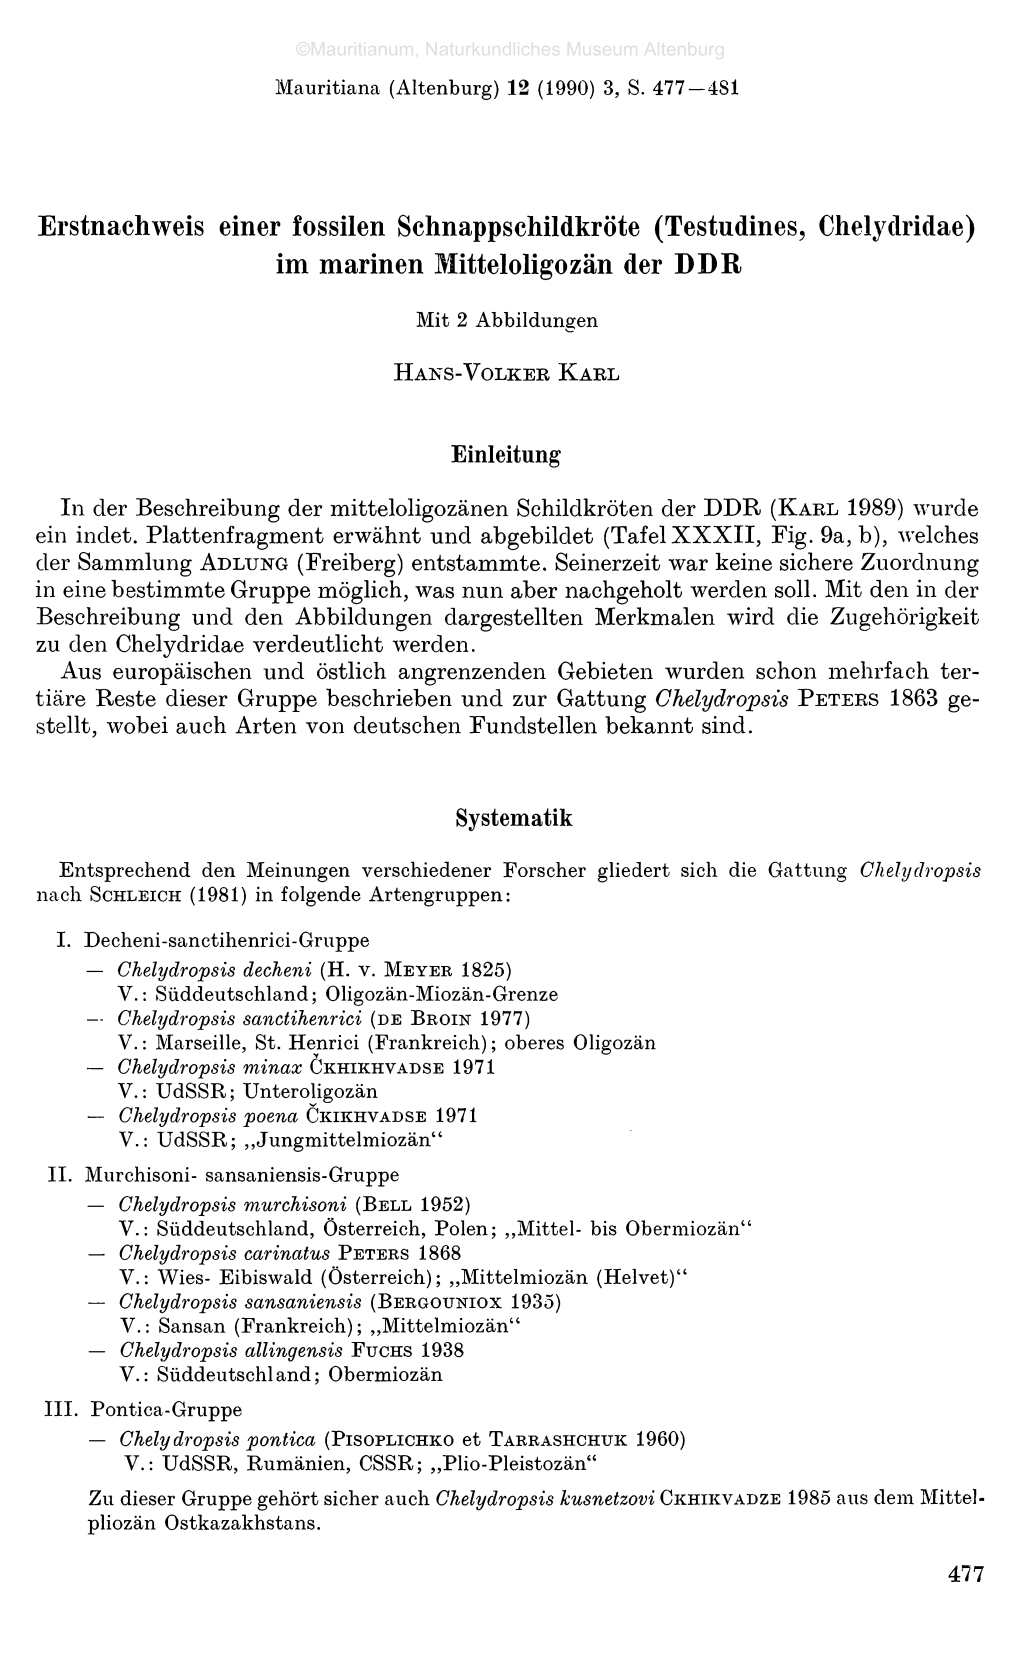 Testudines, Chelydridae) Im Marinen Mitteloligozän Der DDR